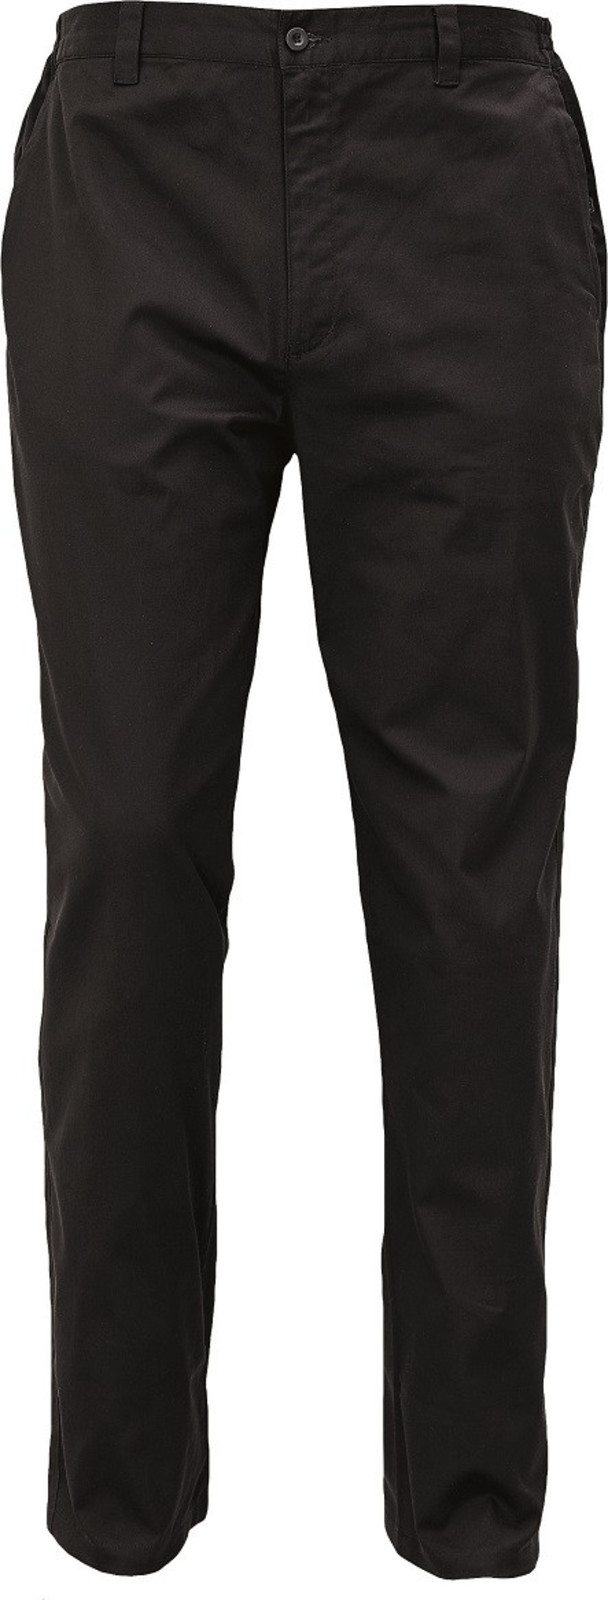 Voľnočasové nohavice Lagan pánske - veľkosť: 56, farba: čierna